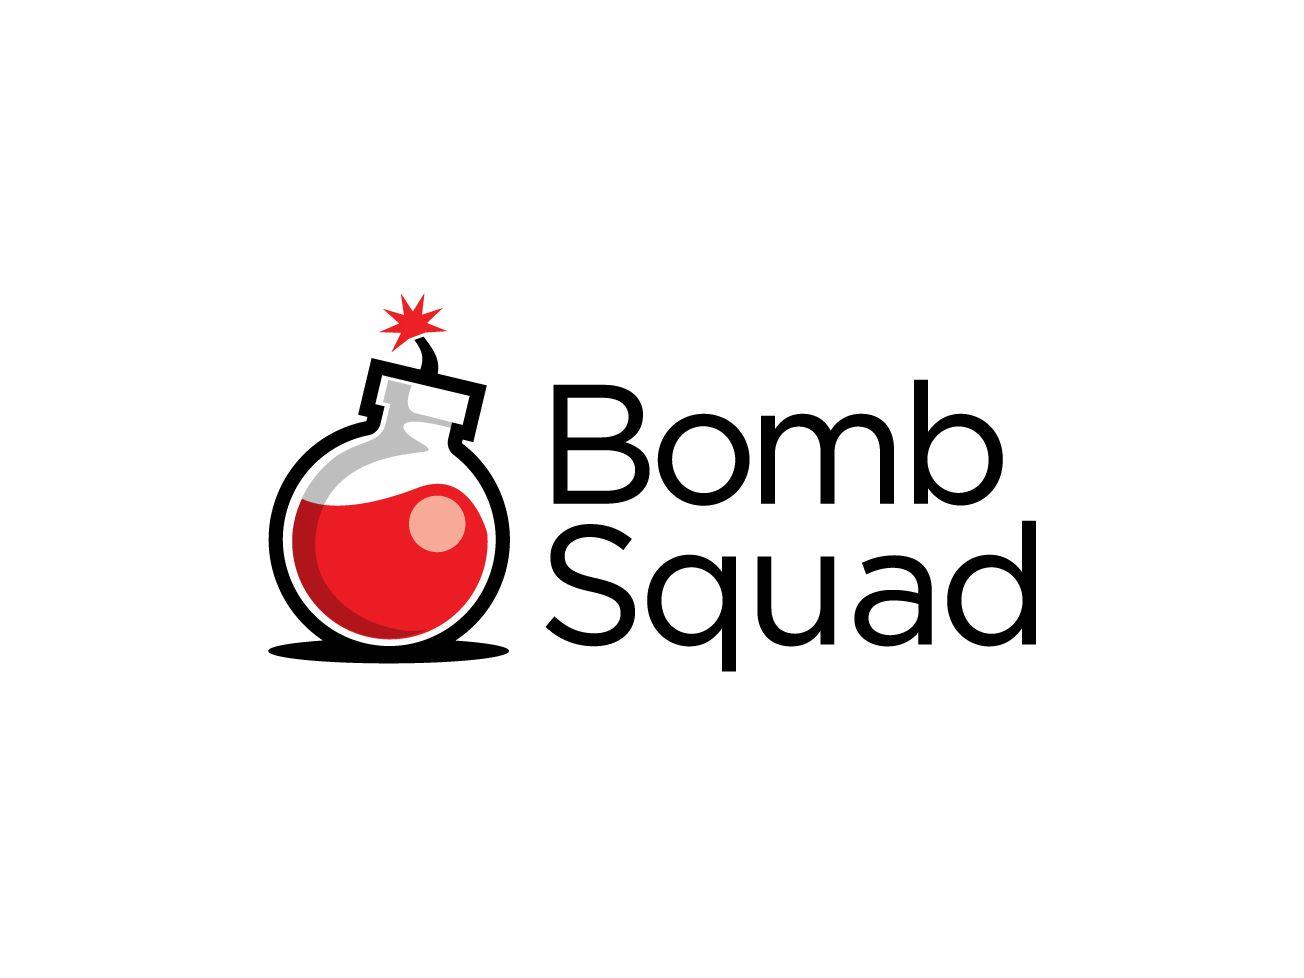 Bomb Squad Logo - Bomb Squad Logo by Pand | Dribbble | Dribbble